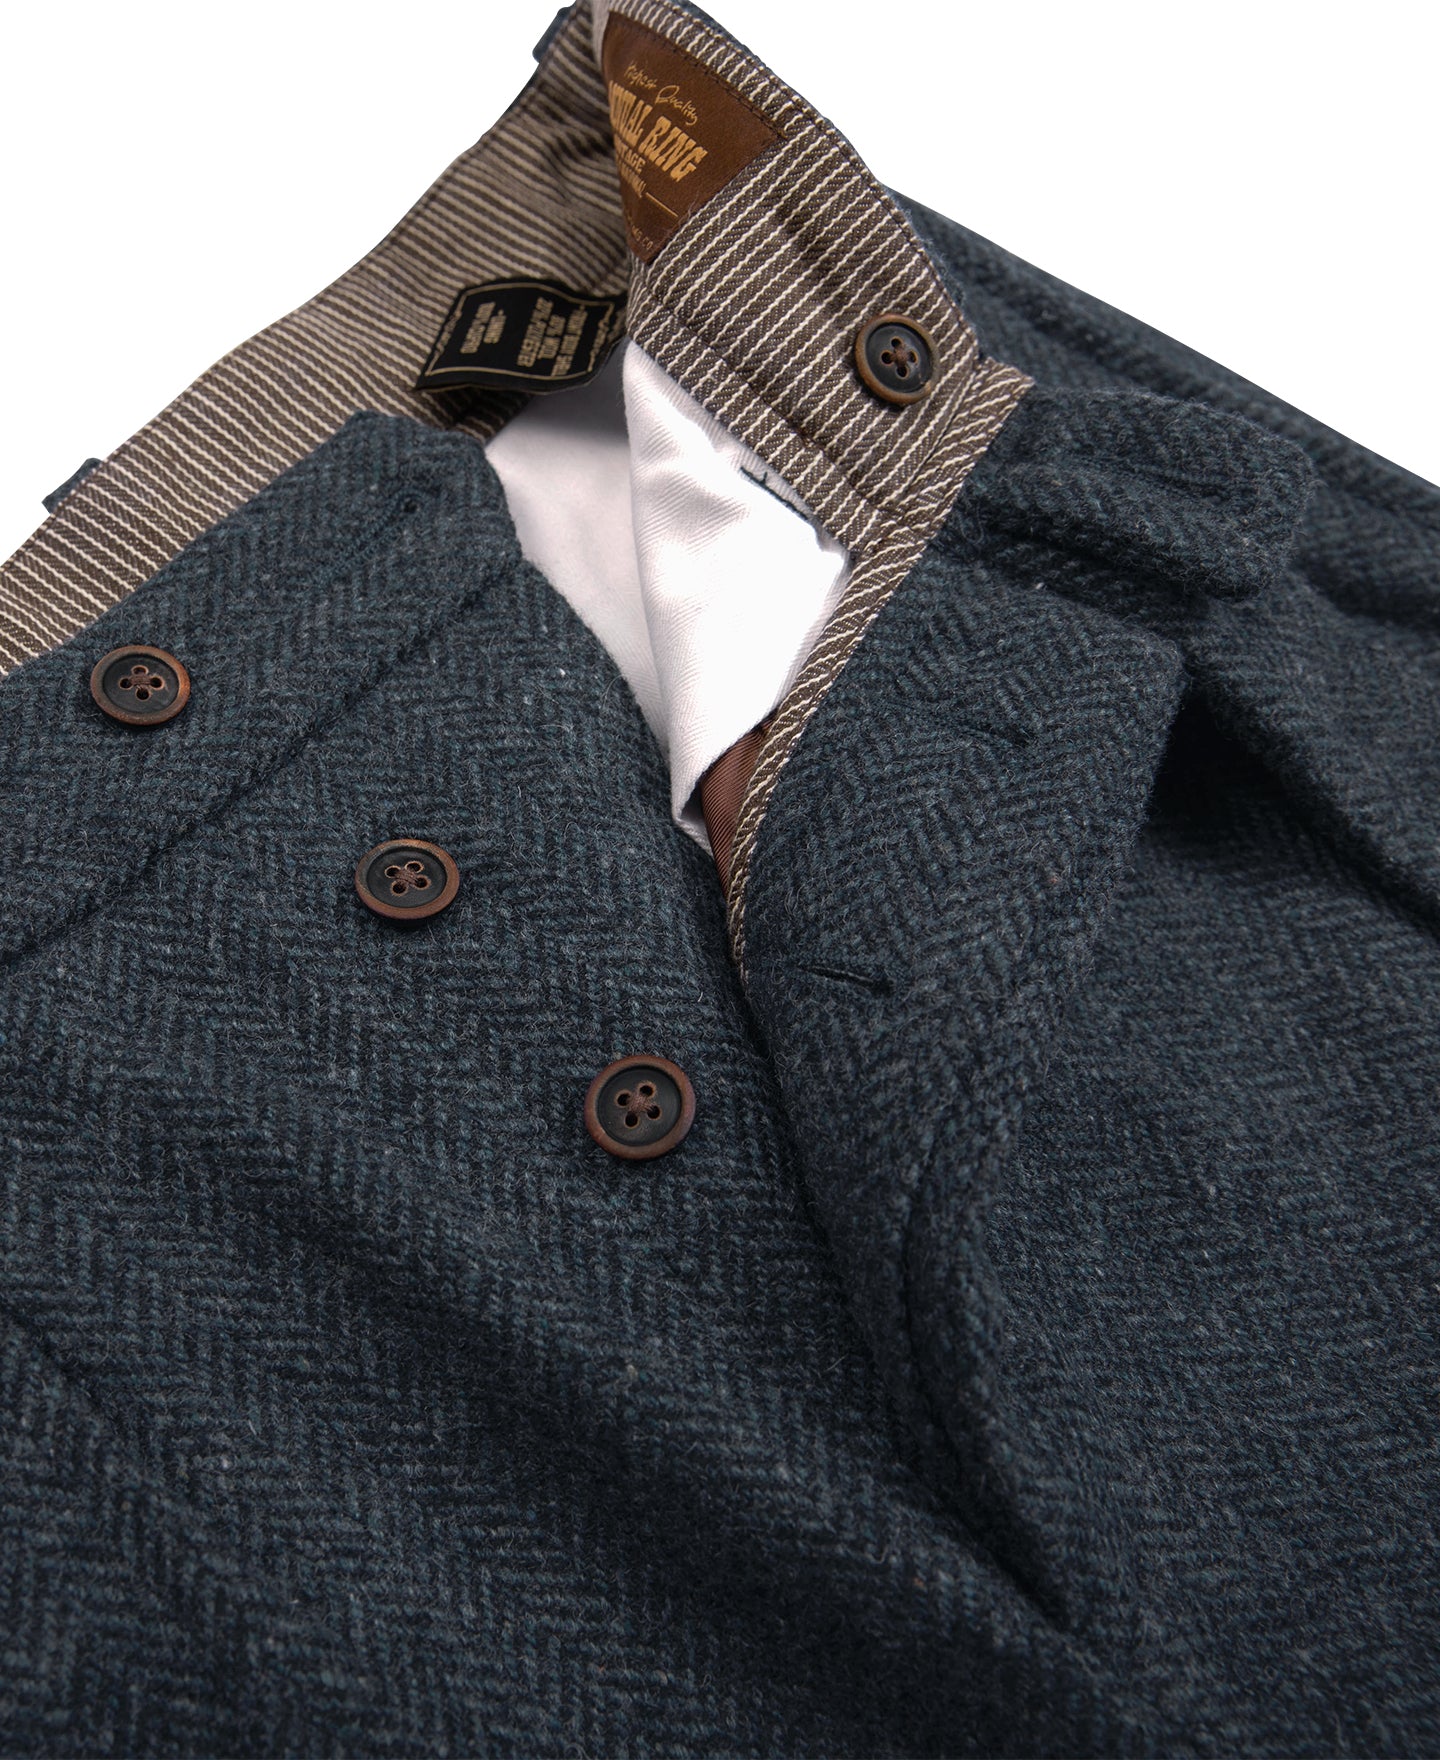 1930s American Style Herringbone Navy Wool Tweed Trousers